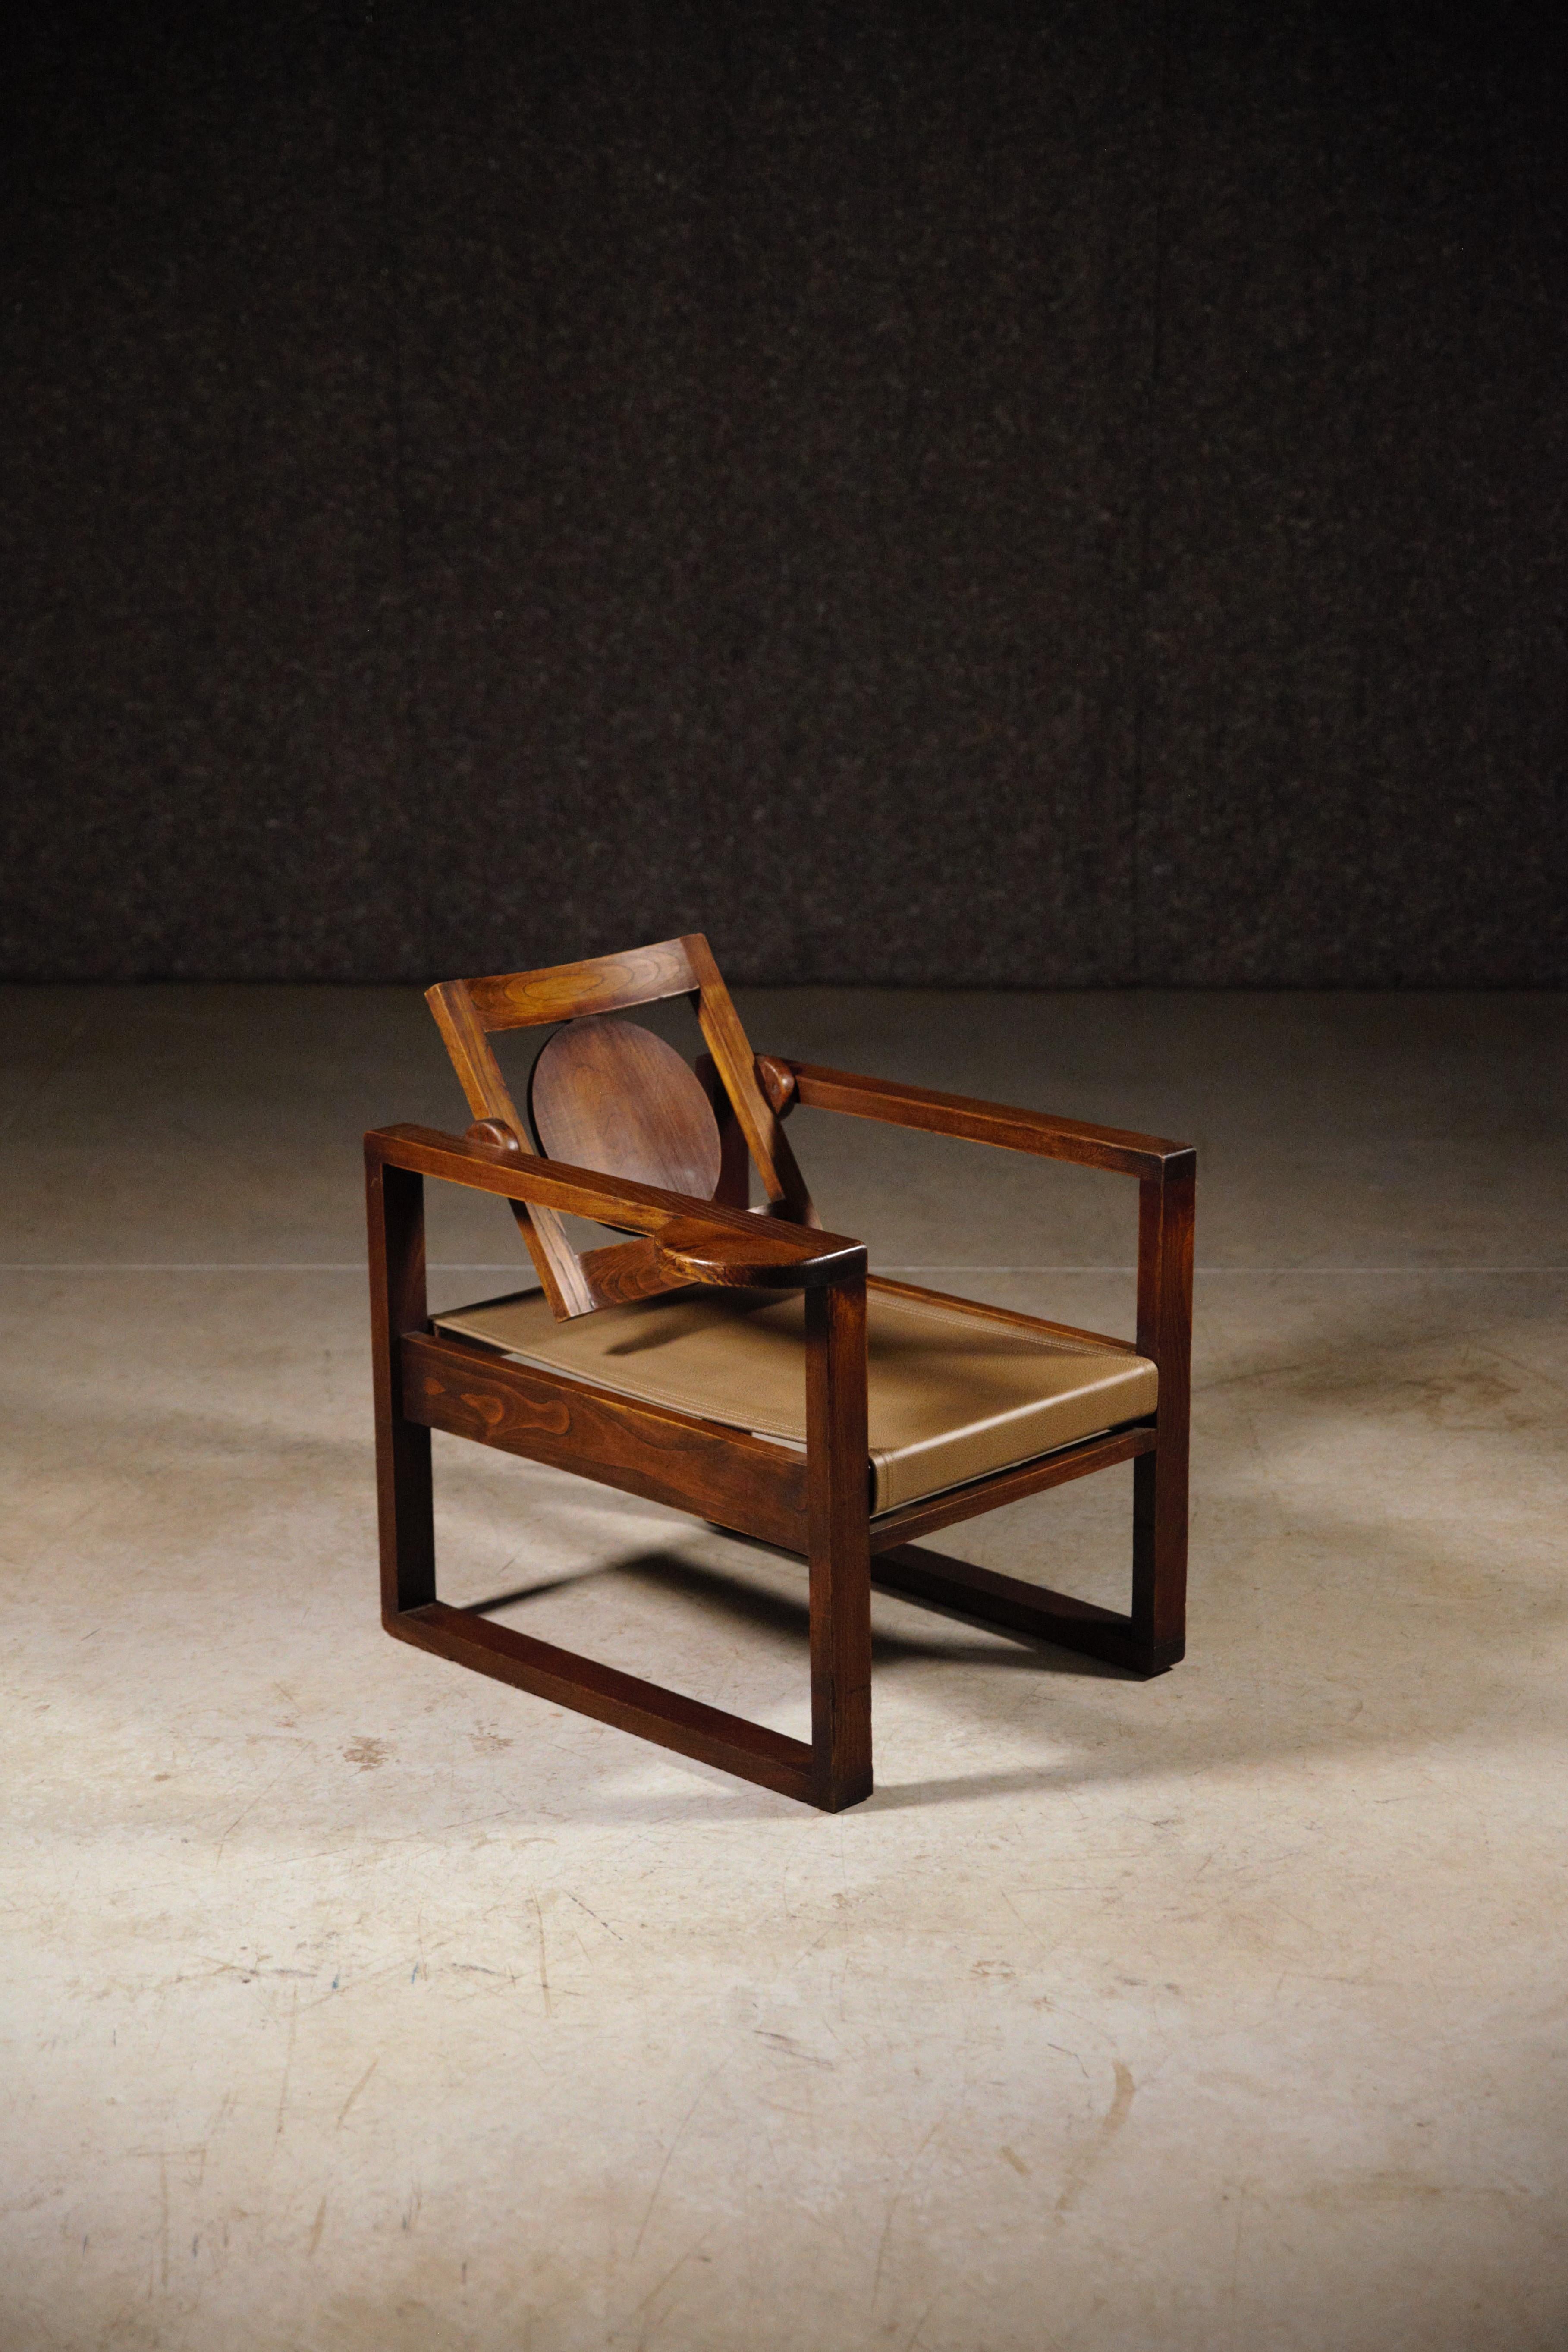 Ein seltenes Paar modernistischer Sessel von Victor Courtray.

Das Leder ist neu.

In ausgezeichnetem Zustand.

1930 / 40s